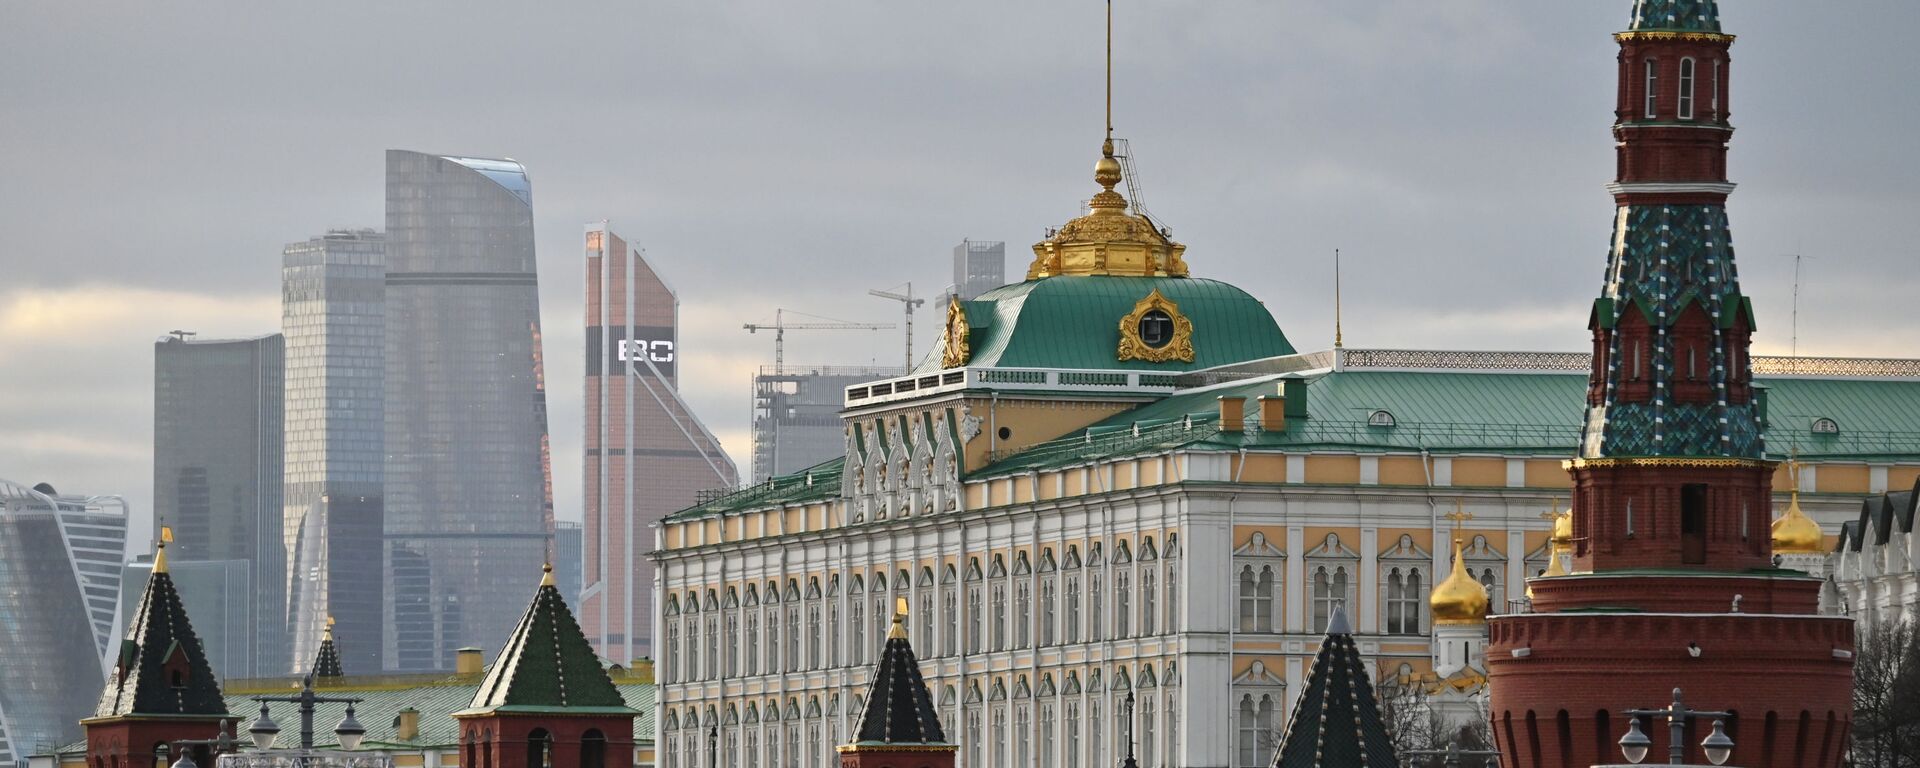 Московский Кремль и небоскребы делового центра Москва-сити, архивное фото - Sputnik Latvija, 1920, 30.03.2021